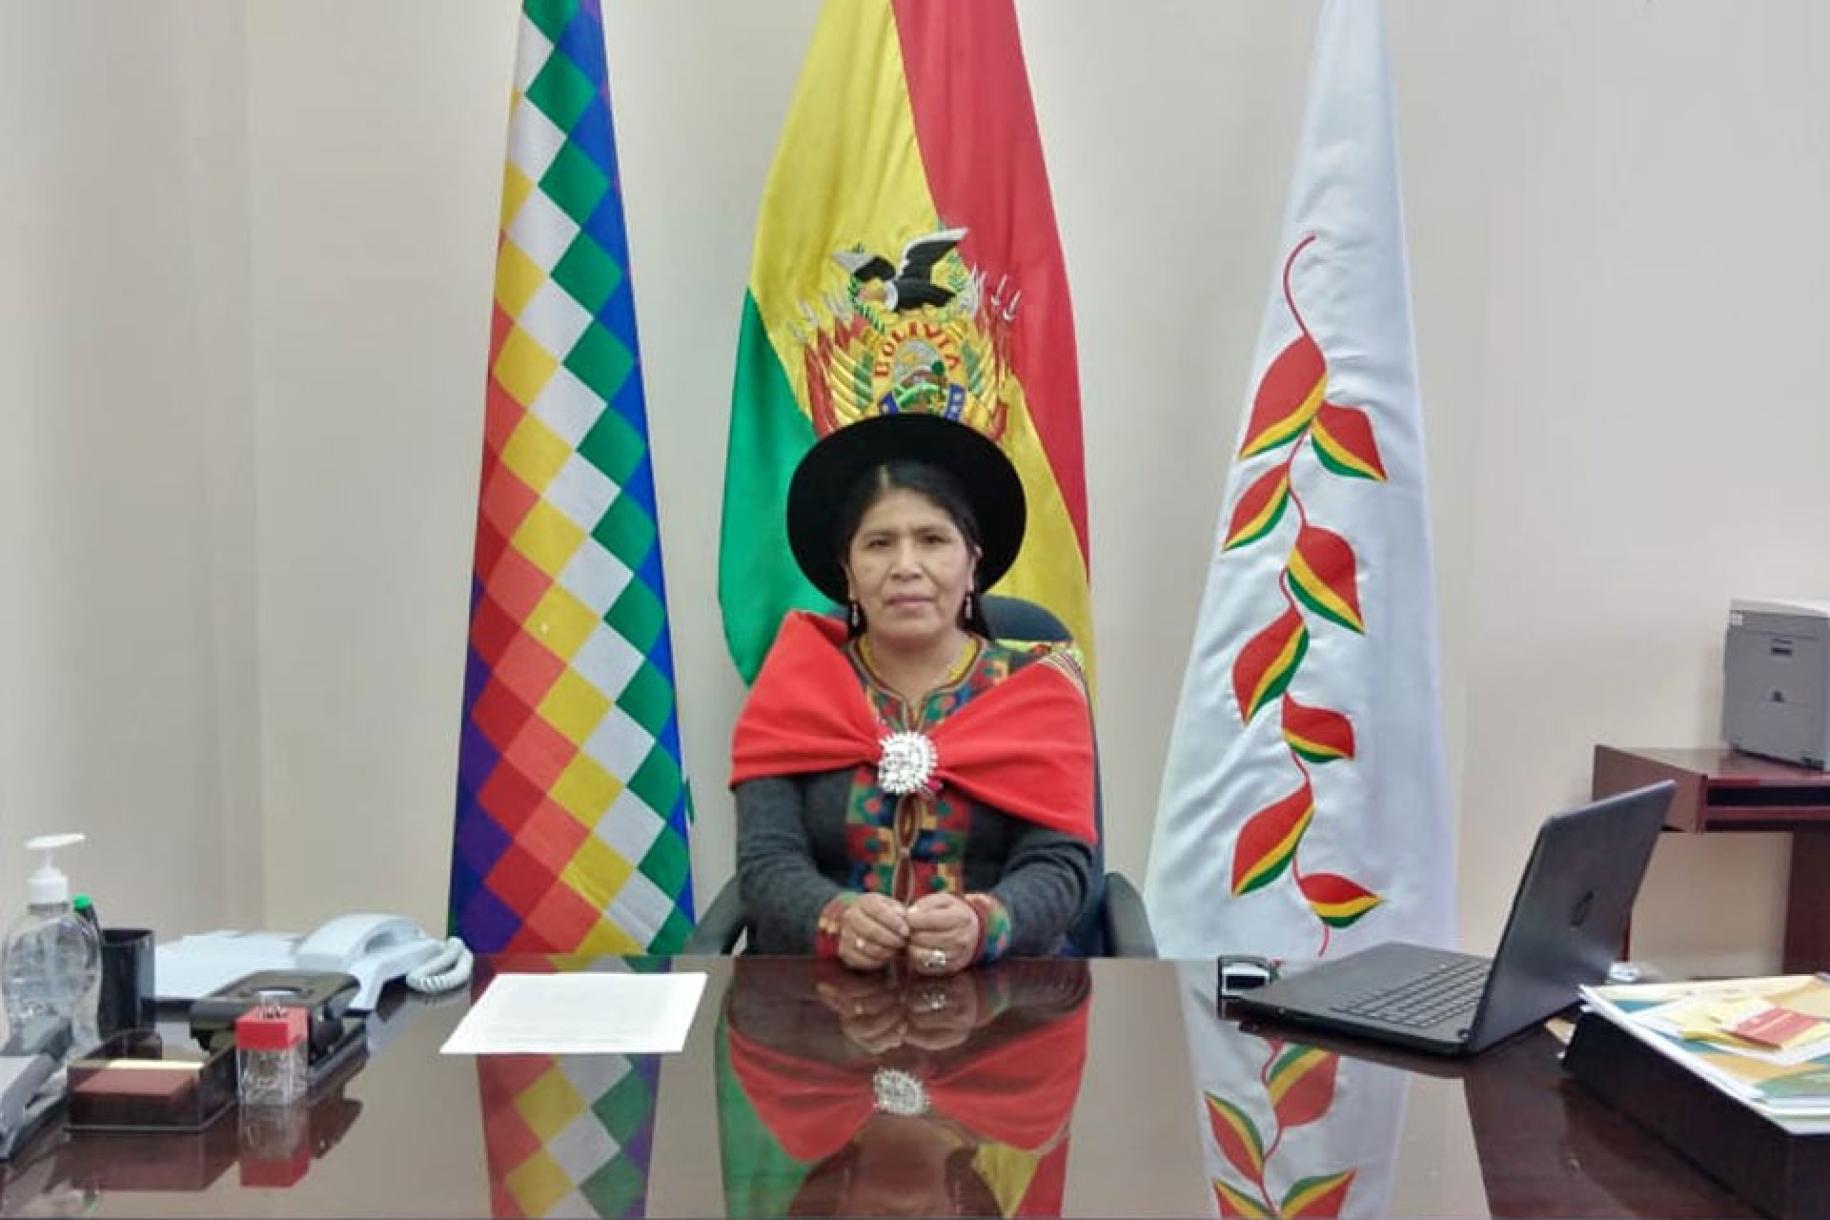 Una mujer vestida con el traje tradicional boliviano delante de tres banderas.